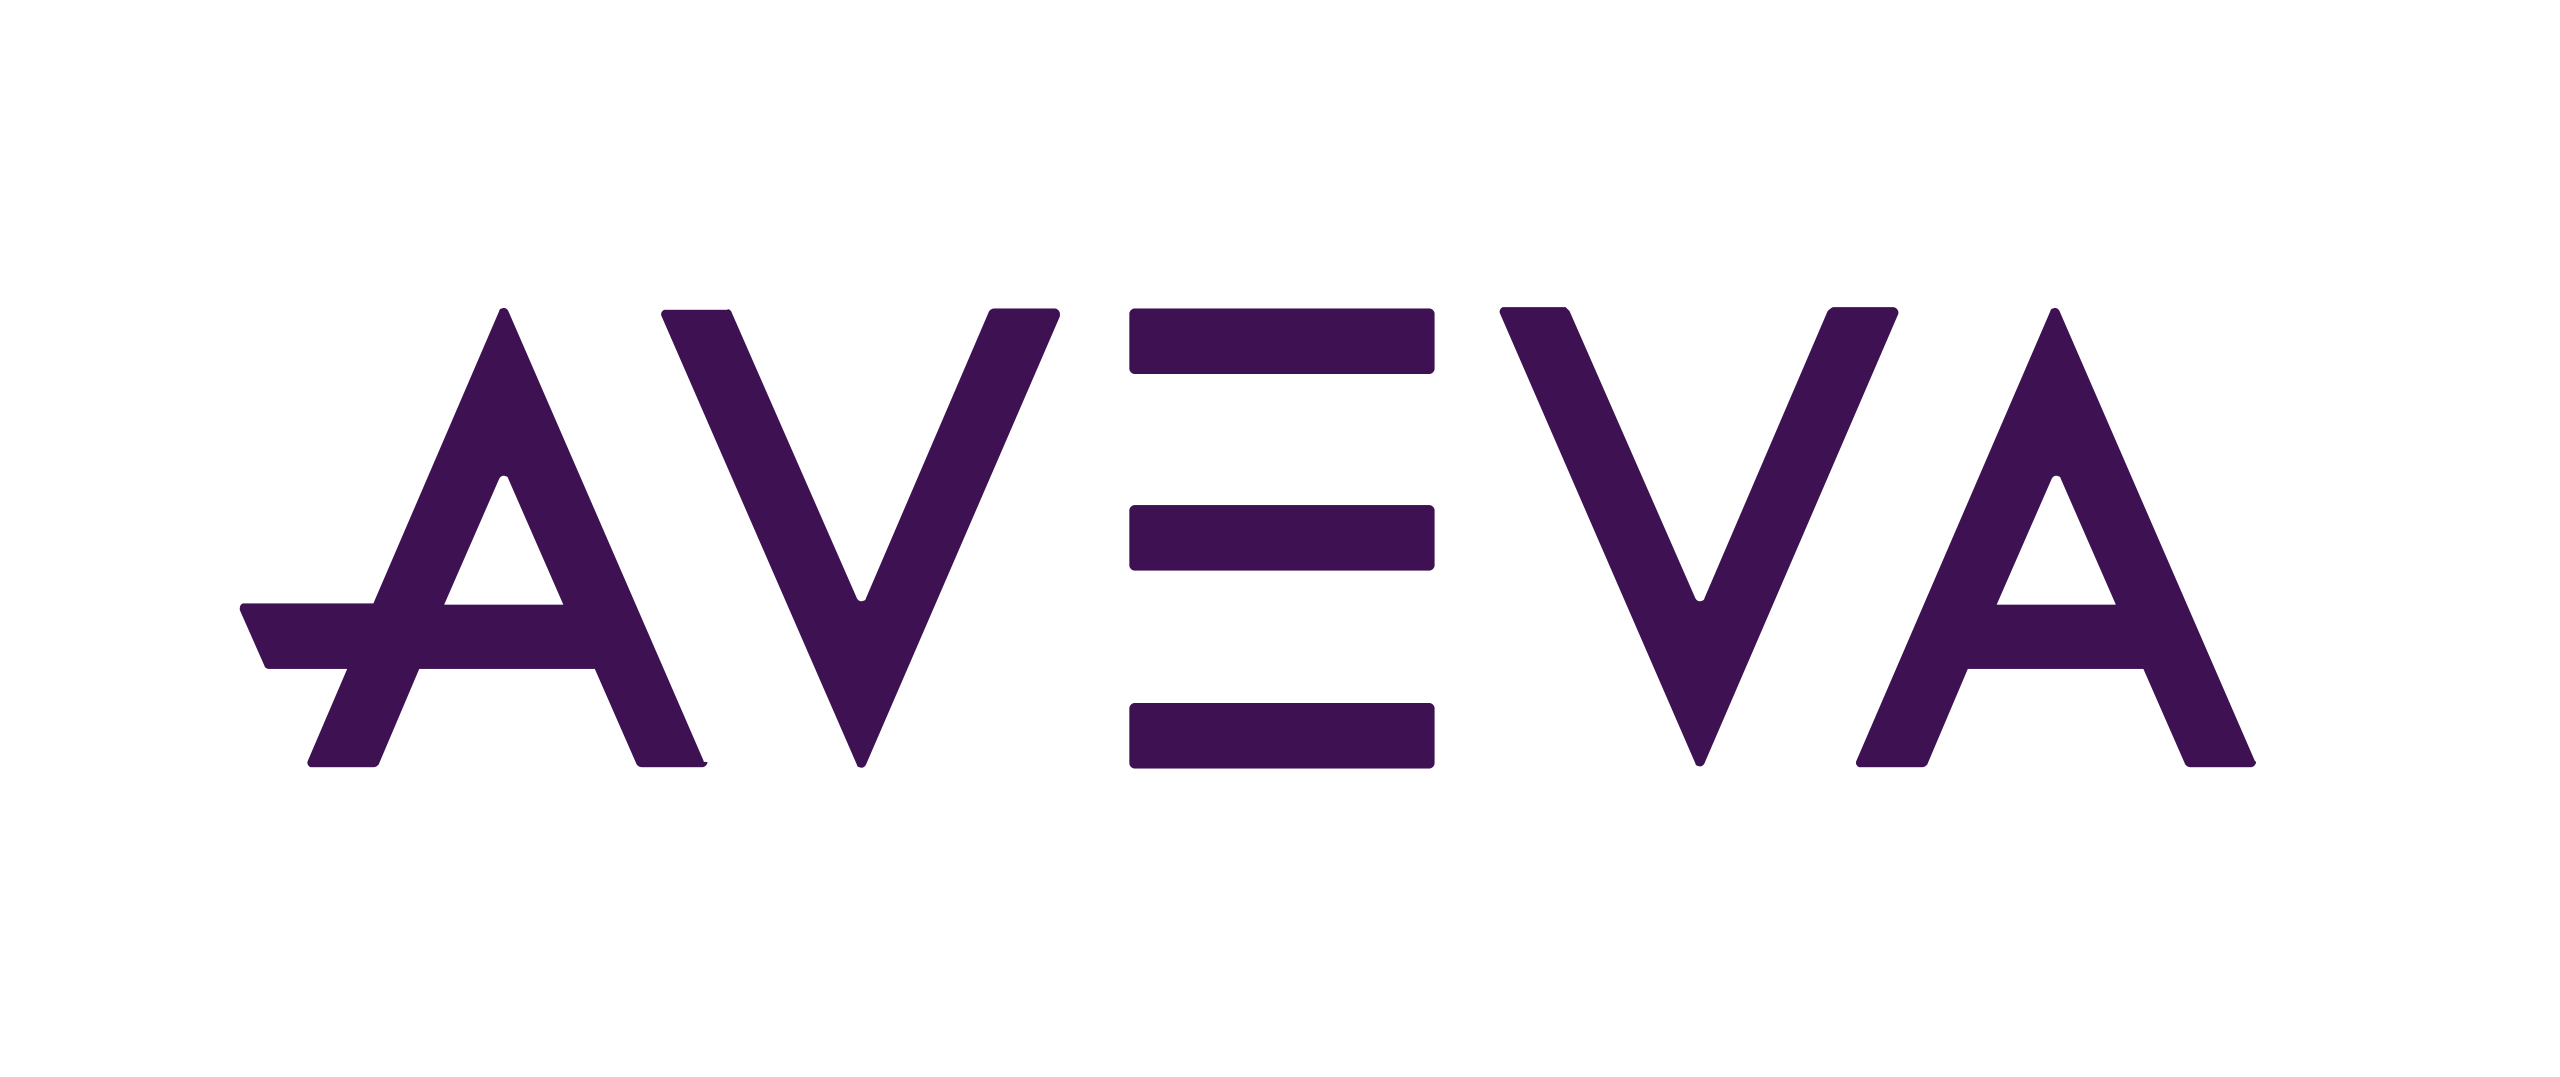 2560px Aveva logo svg